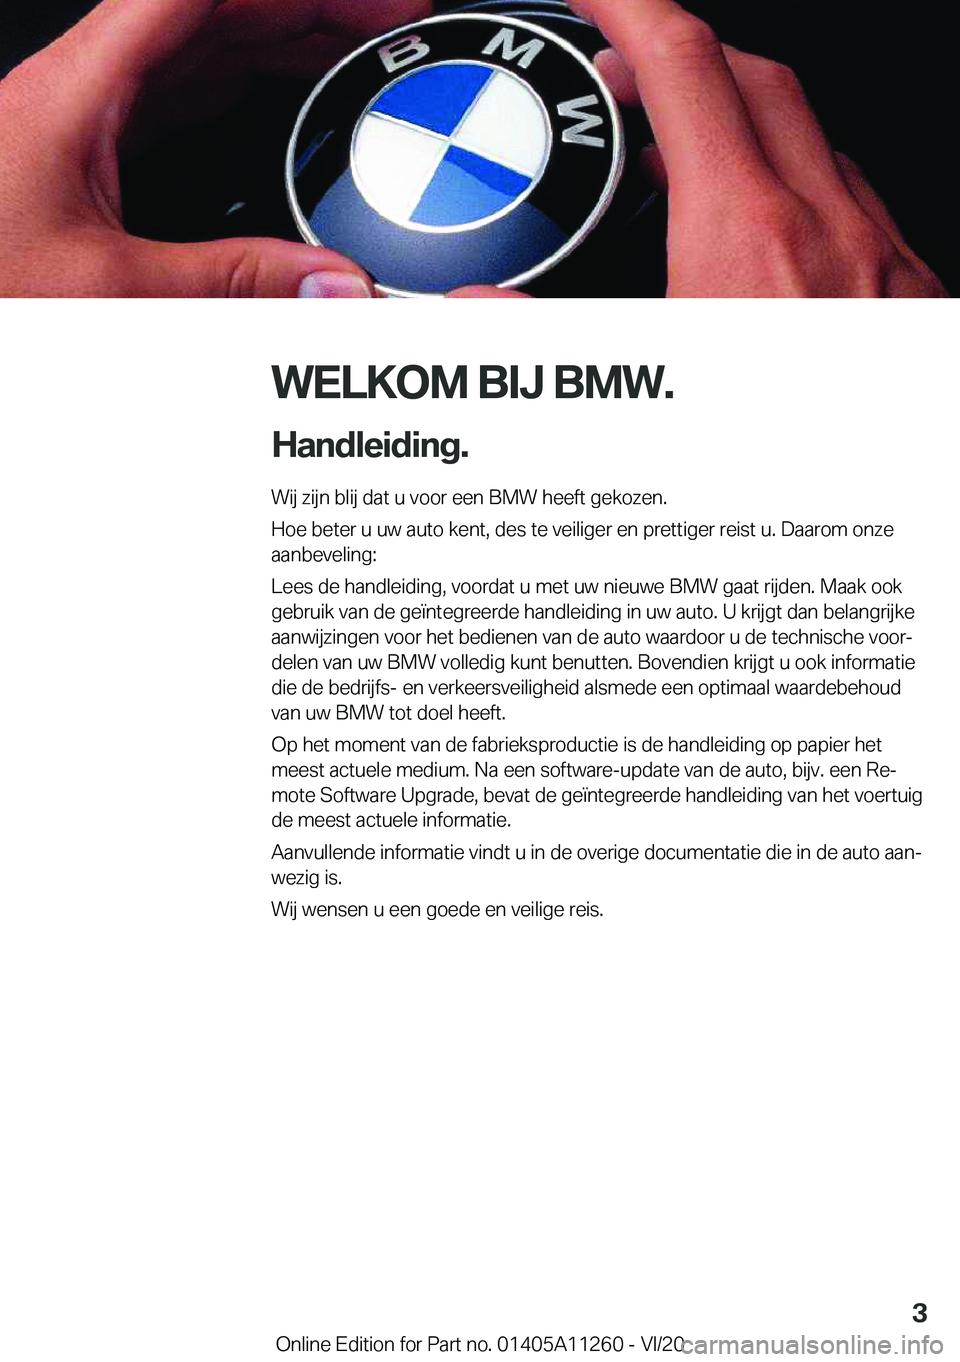 BMW 4 SERIES COUPE 2021  Instructieboekjes (in Dutch) �W�E�L�K�O�M��B�I�J��B�M�W�.
�H�a�n�d�l�e�i�d�i�n�g�. �W�i�j��z�i�j�n��b�l�i�j��d�a�t��u��v�o�o�r��e�e�n��B�M�W��h�e�e�f�t��g�e�k�o�z�e�n�.
�H�o�e��b�e�t�e�r��u��u�w��a�u�t�o��k�e�n�t�